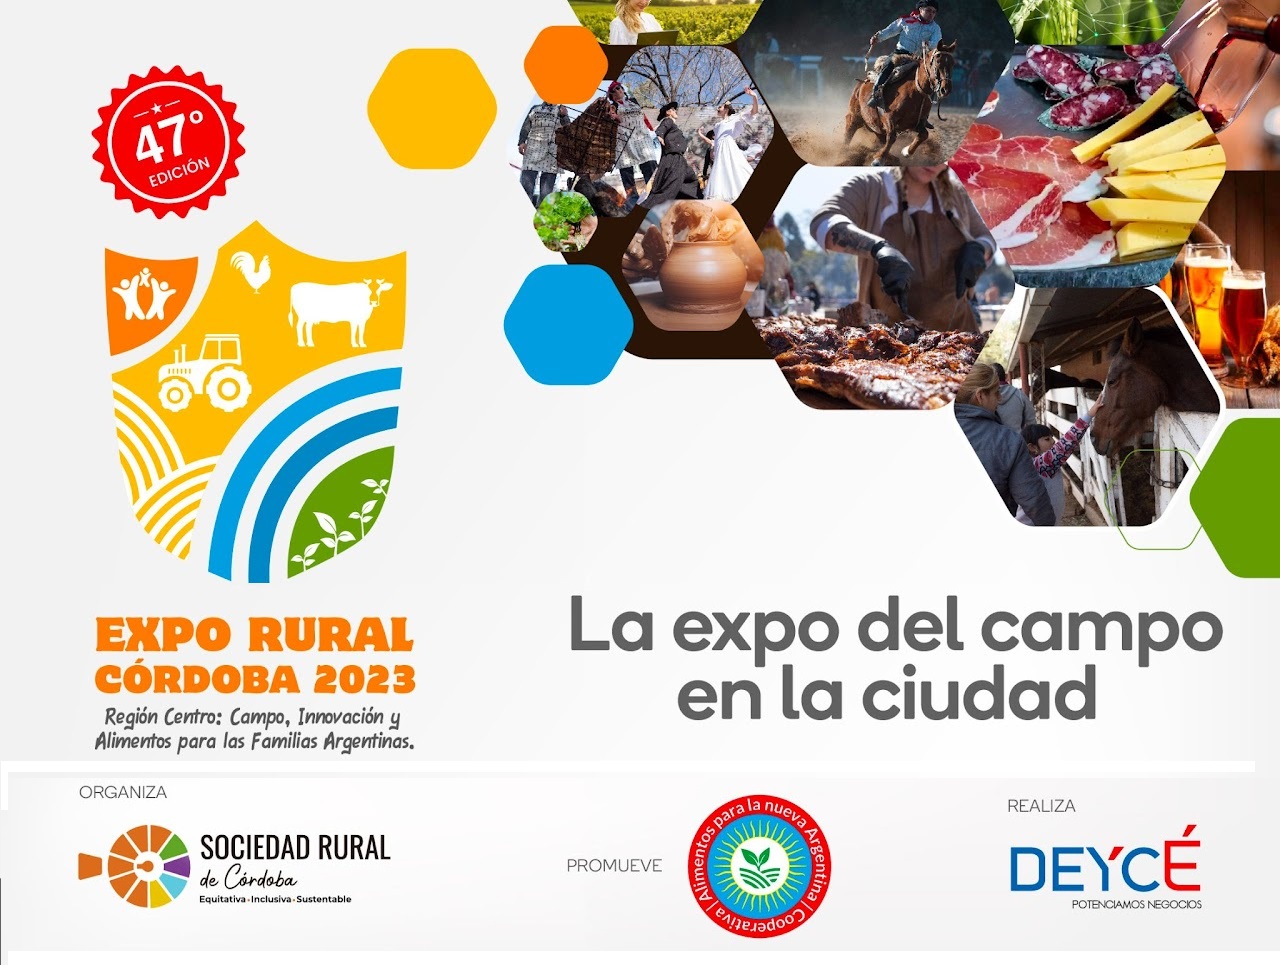 Acceso a alimentos y soberanía alimentaria, ejes de la exposición de la Sociedad Rural de Córdoba